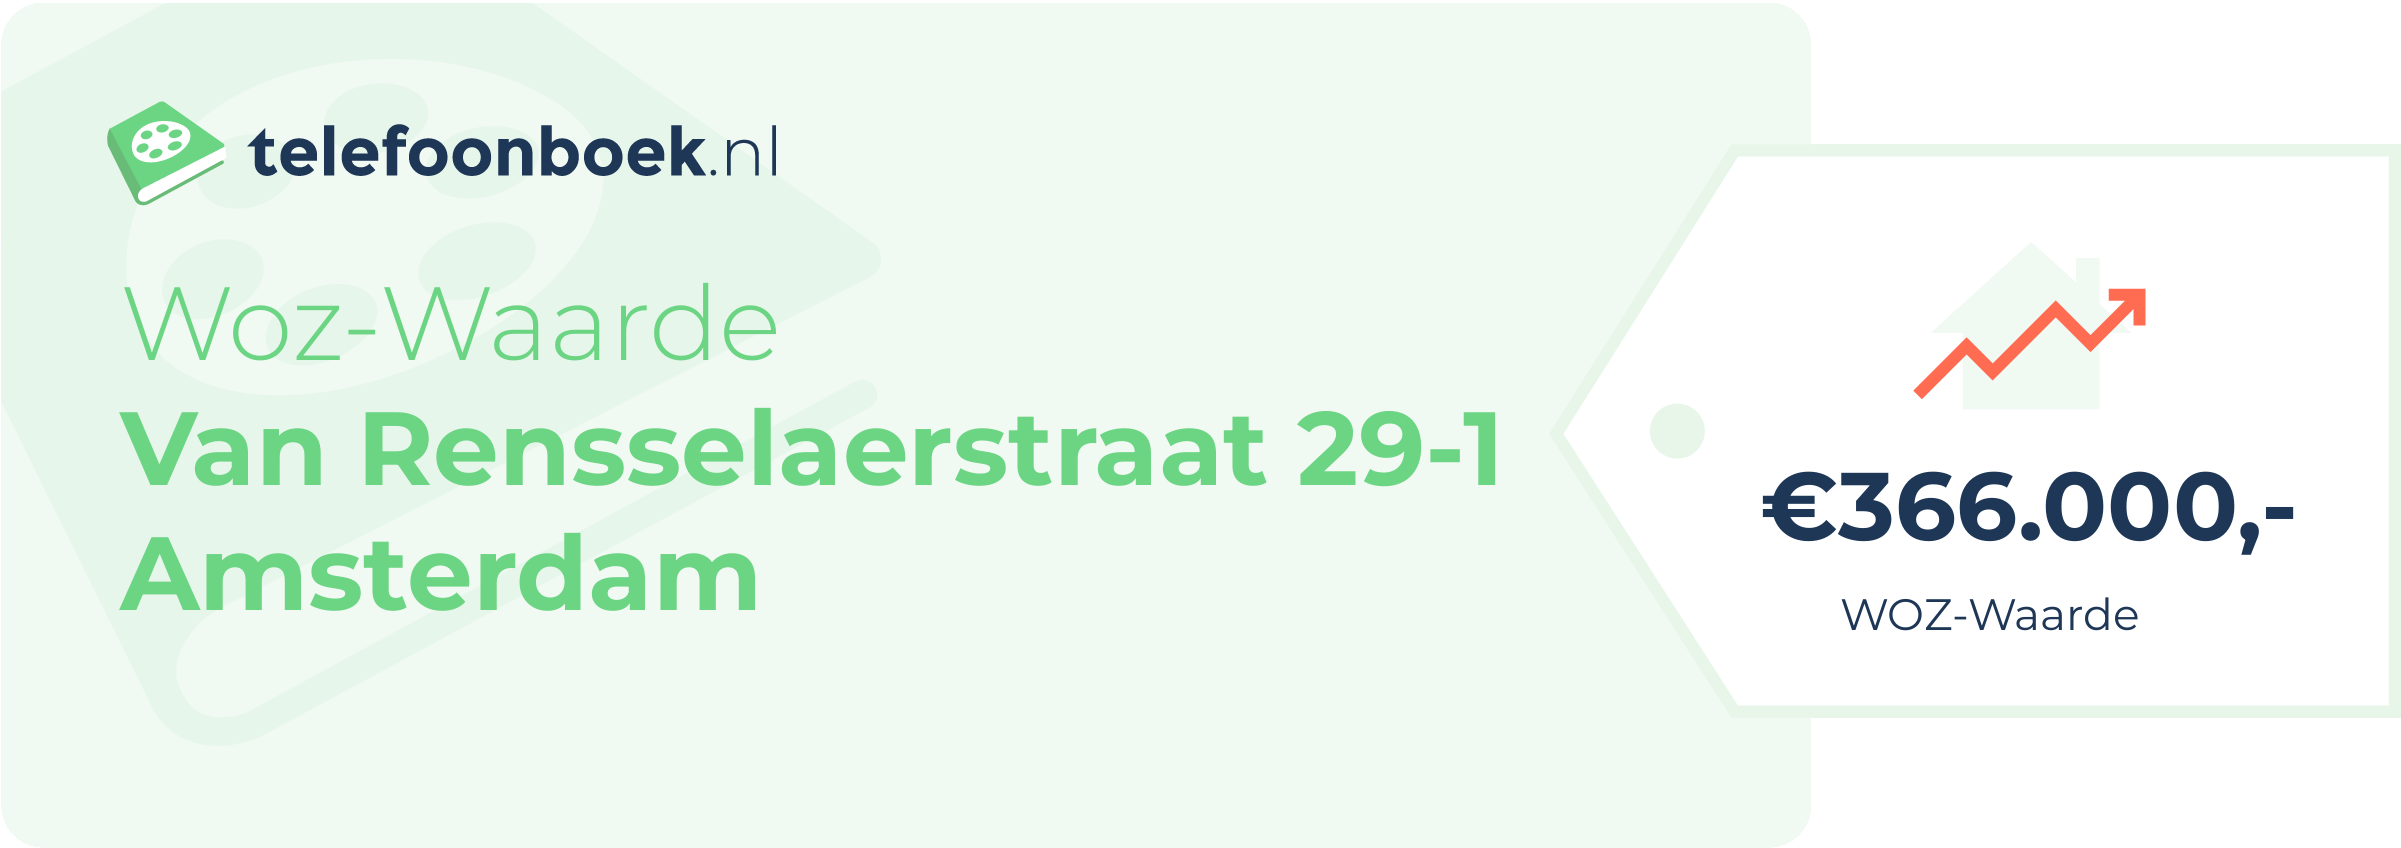 WOZ-waarde Van Rensselaerstraat 29-1 Amsterdam